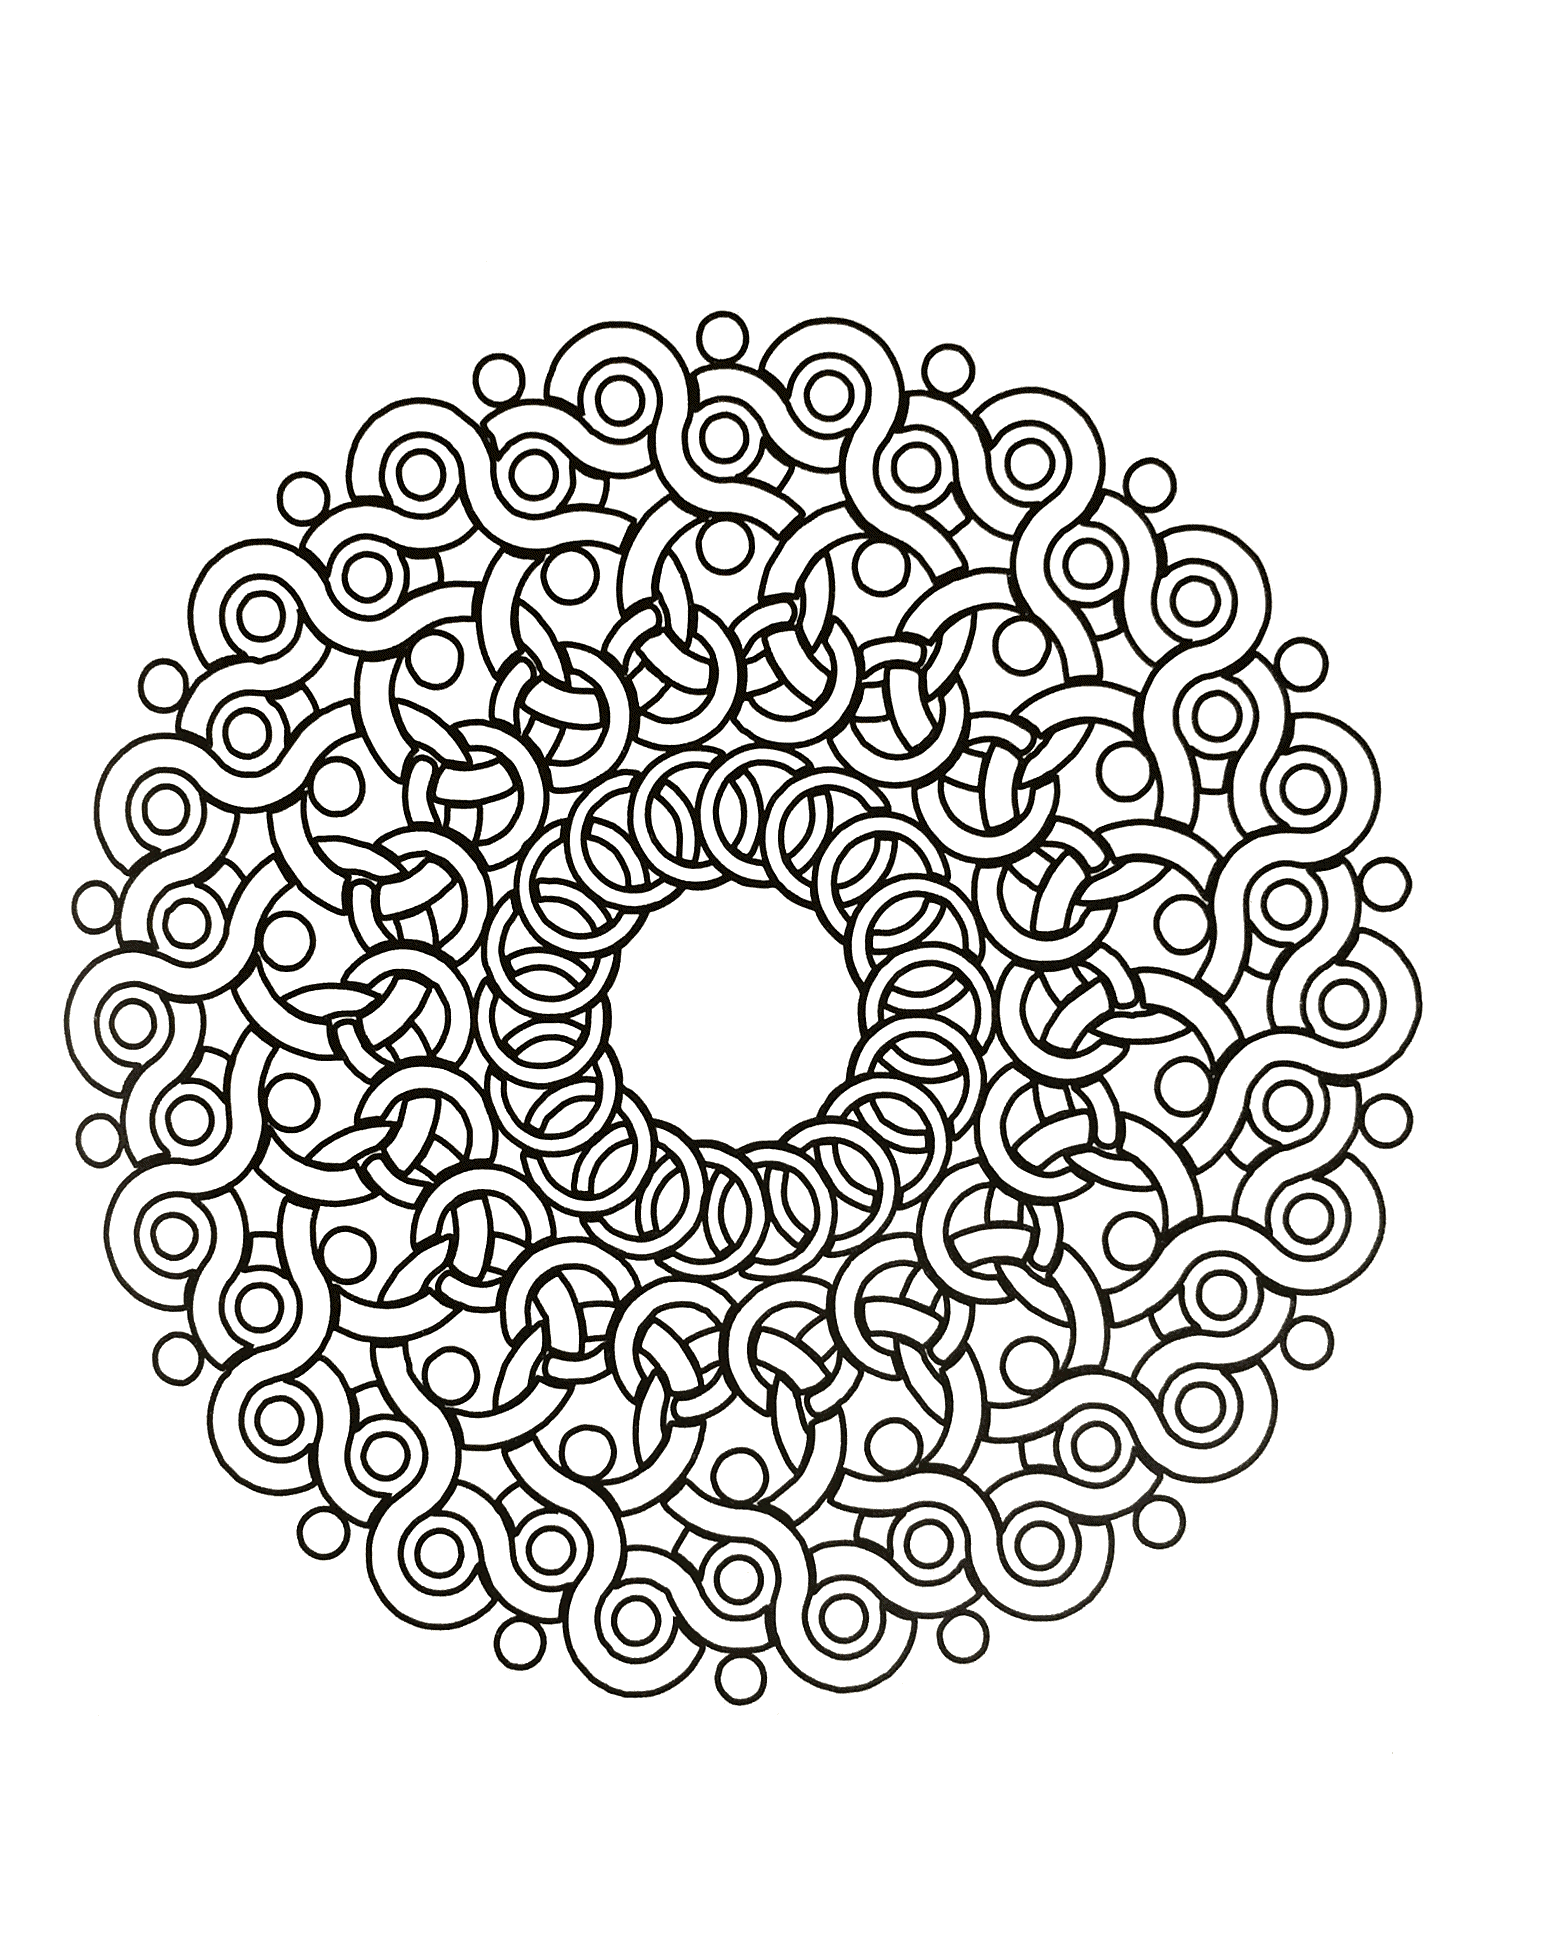 Ein Mandala mit Formen, die an Brombeeren erinnern, für Profis! Dutzende und Aberdutzende von kleinen Bereichen, die nur auf ein paar geschmackvoll ausgewählte Farben warten.